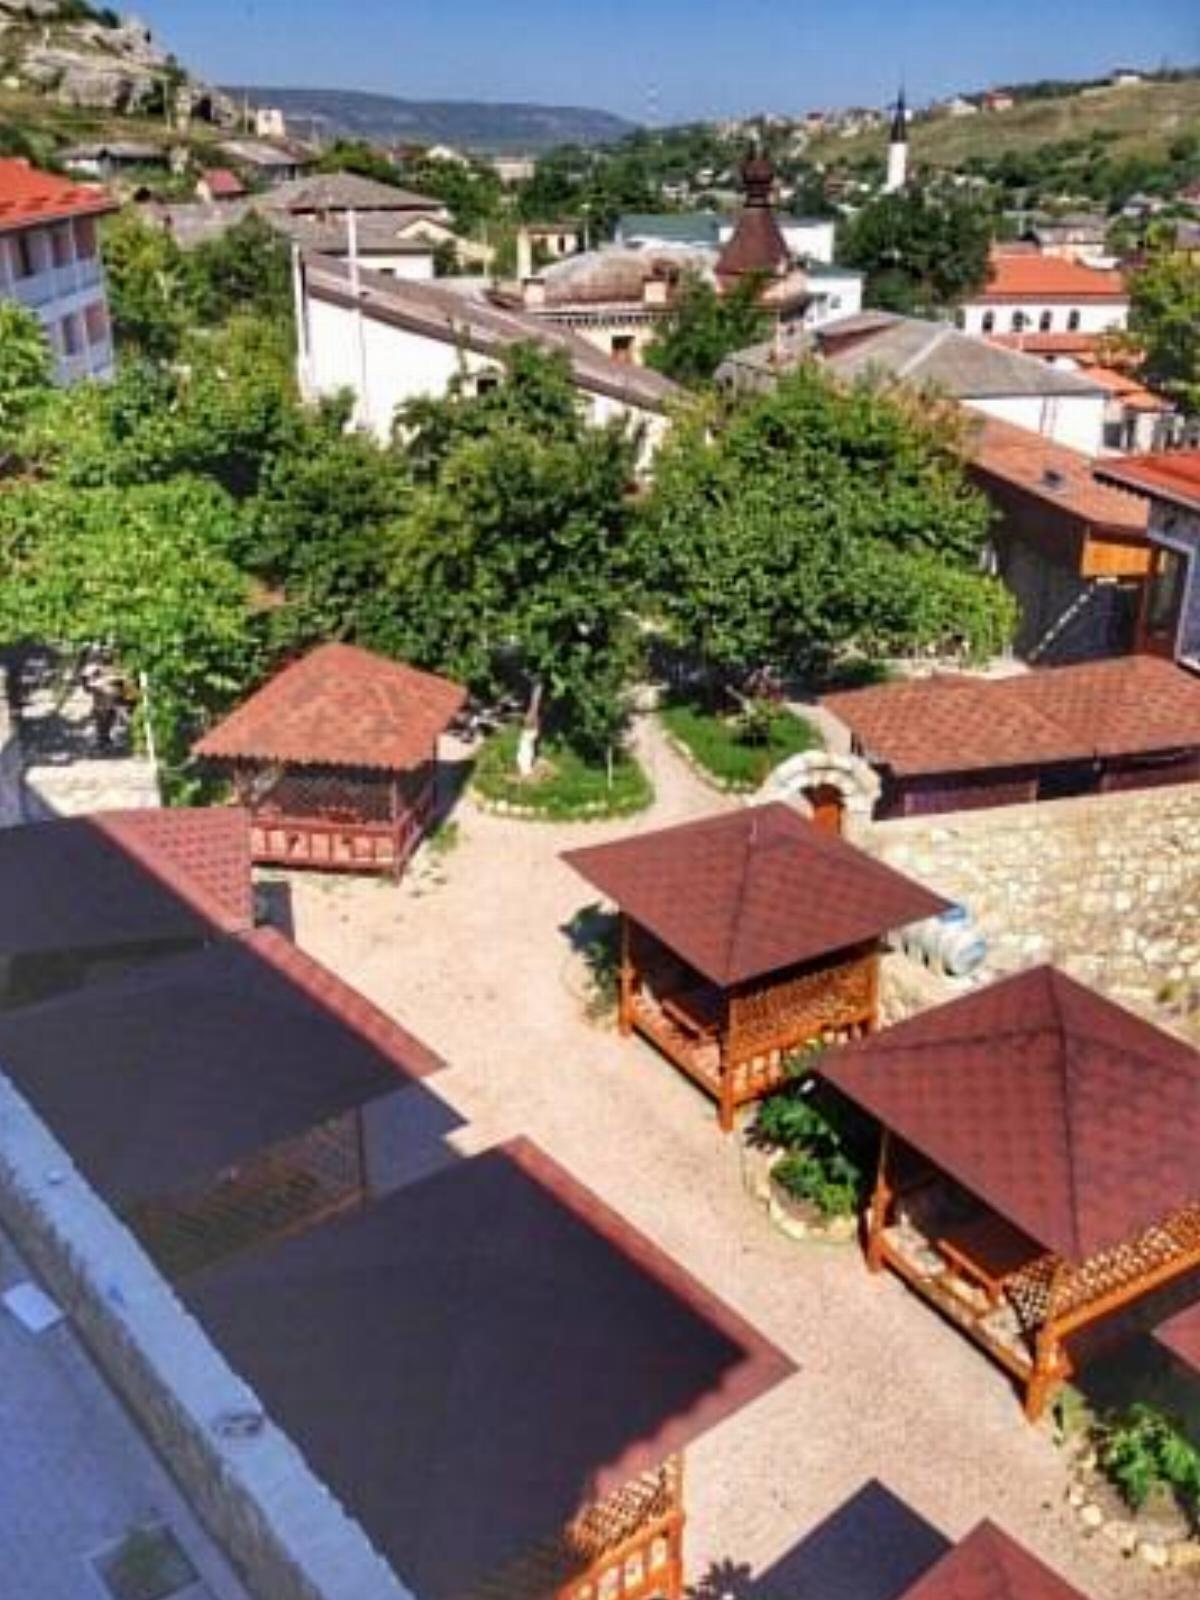 Alie Hotel Bakhchysaray Crimea